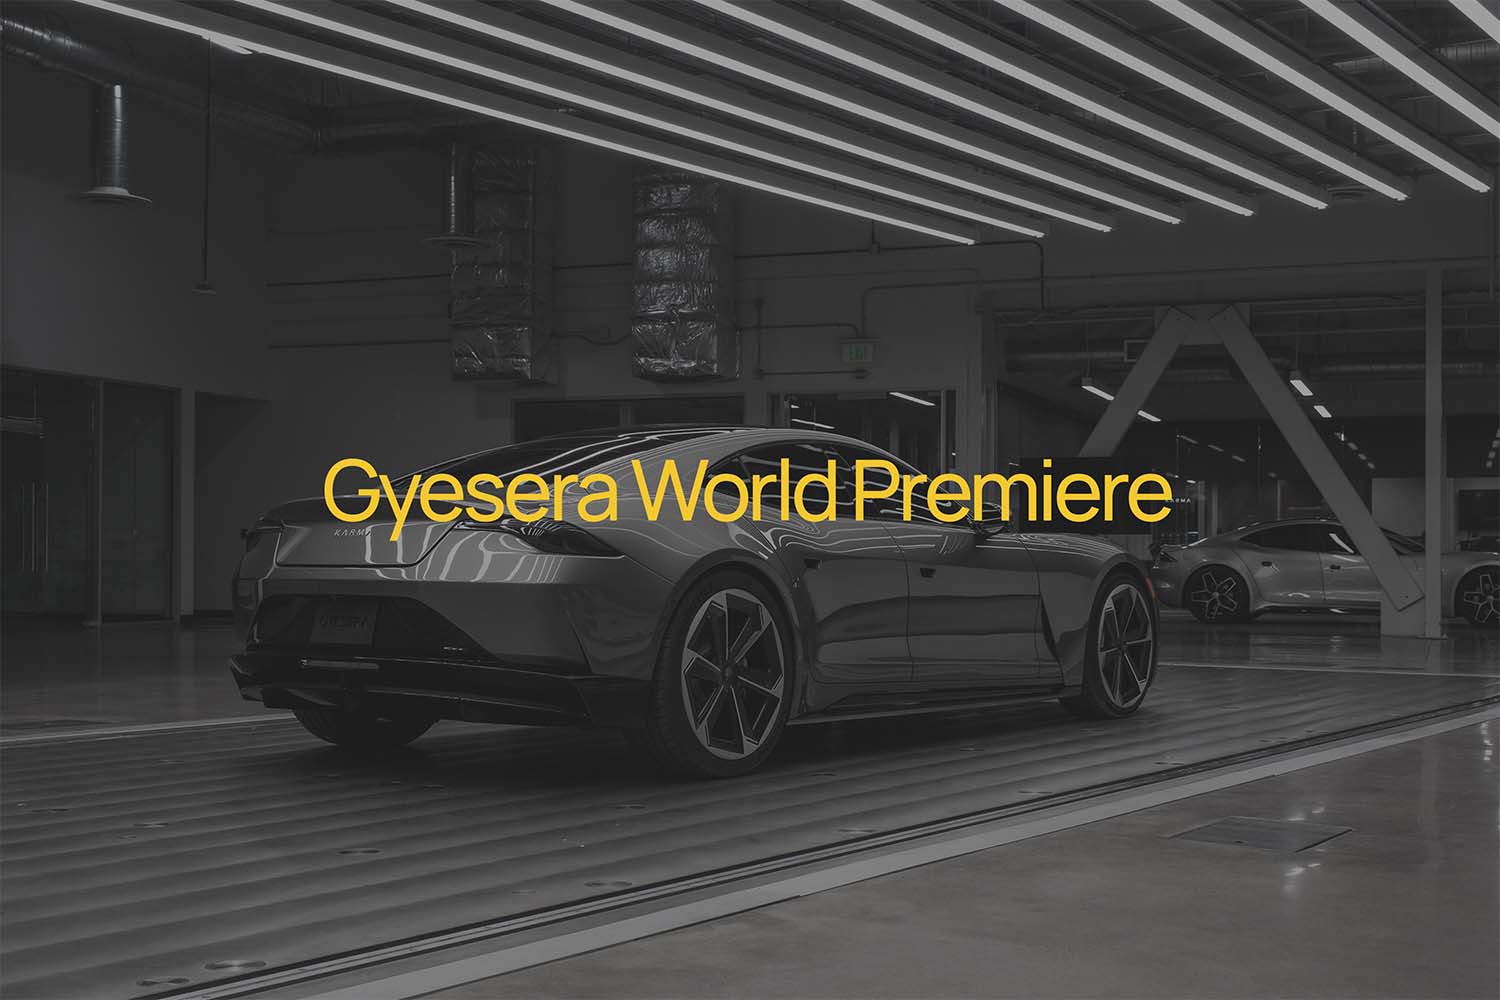 Gyesera World Premiere